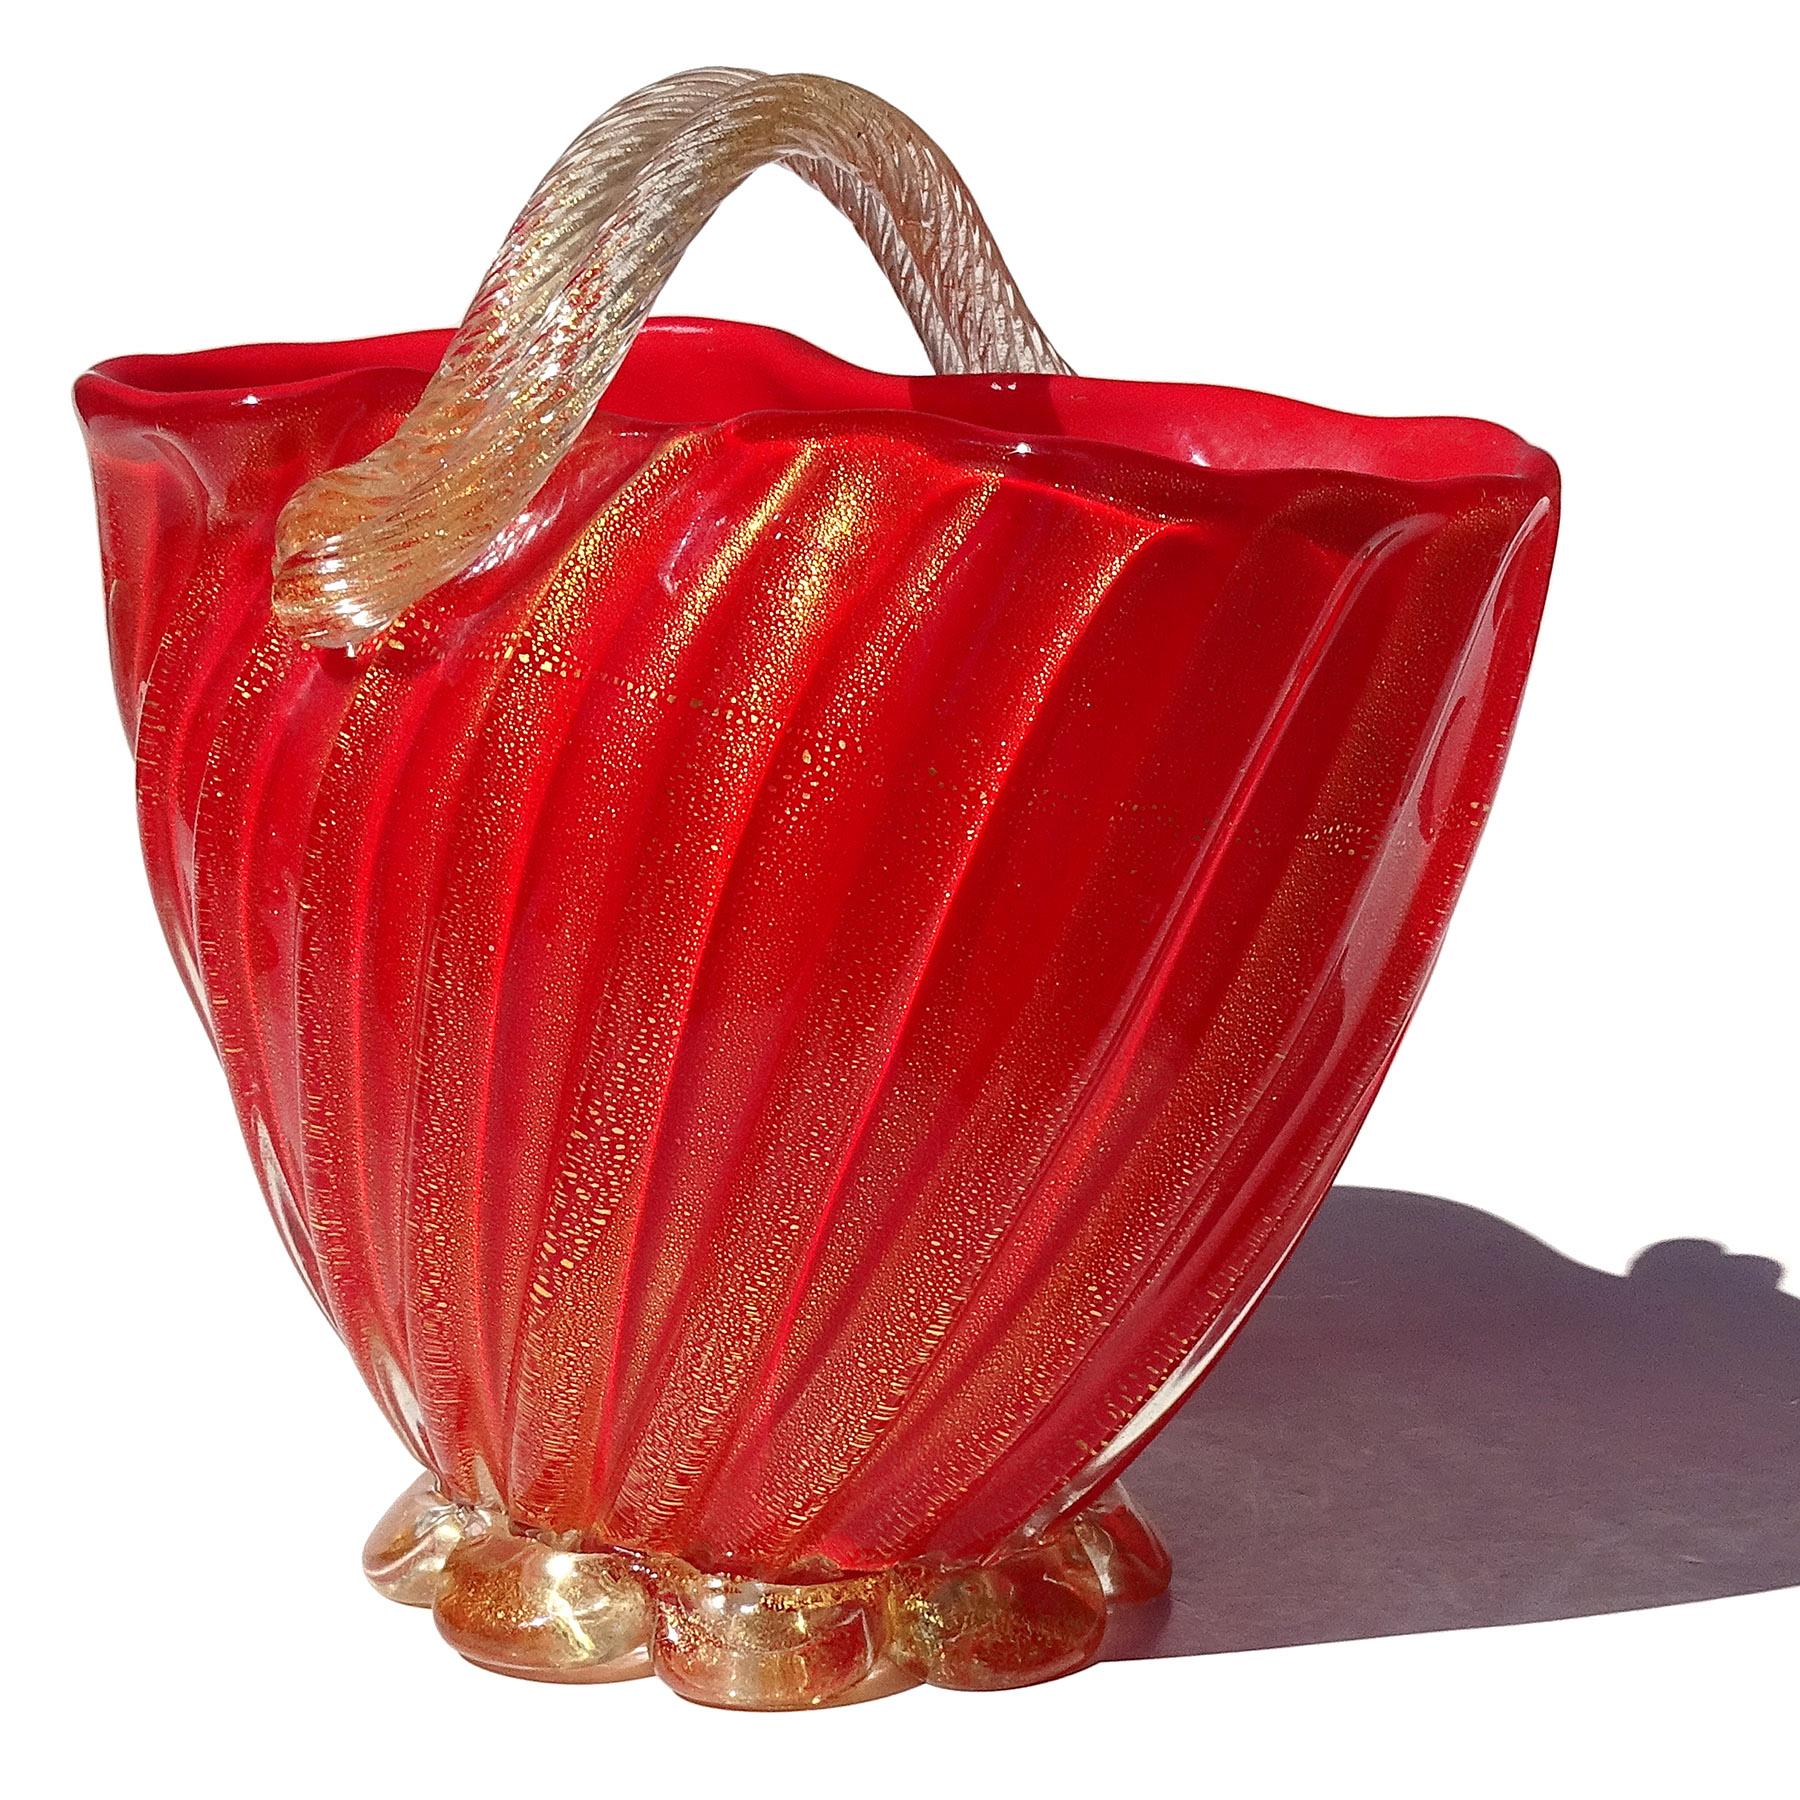 Mid-Century Modern Seguso Murano 1950s Coral Red Gold Flecks Italian Art Glass Flower Basket Vase For Sale